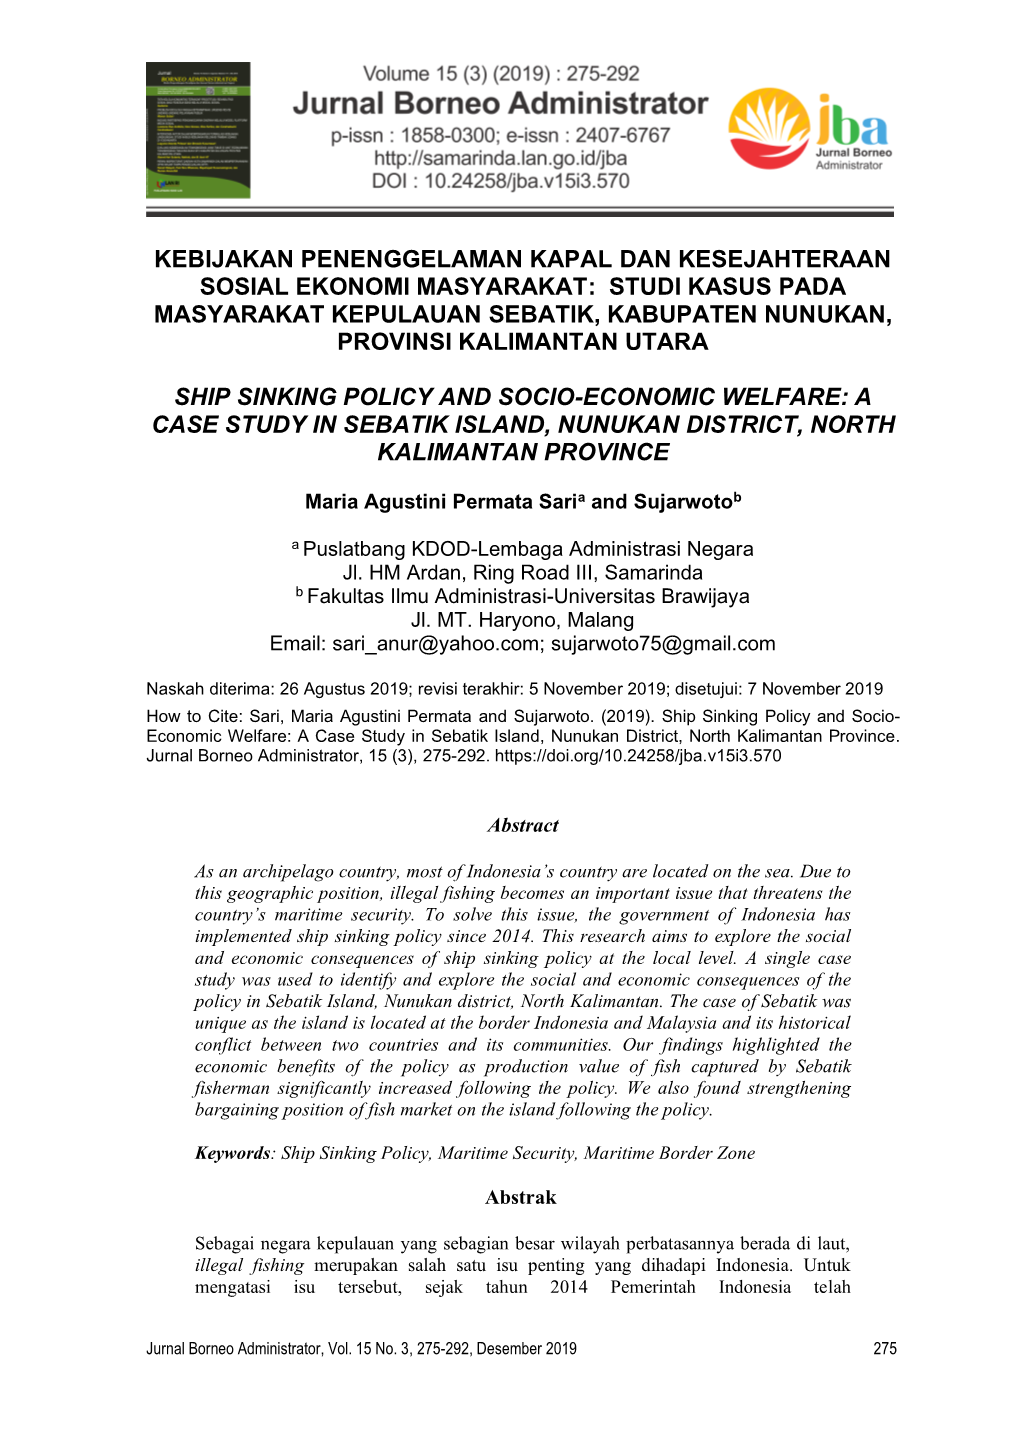 Studi Kasus Pada Masyarakat Kepulauan Sebatik, Kabupaten Nunukan, Provinsi Kalimantan Utara